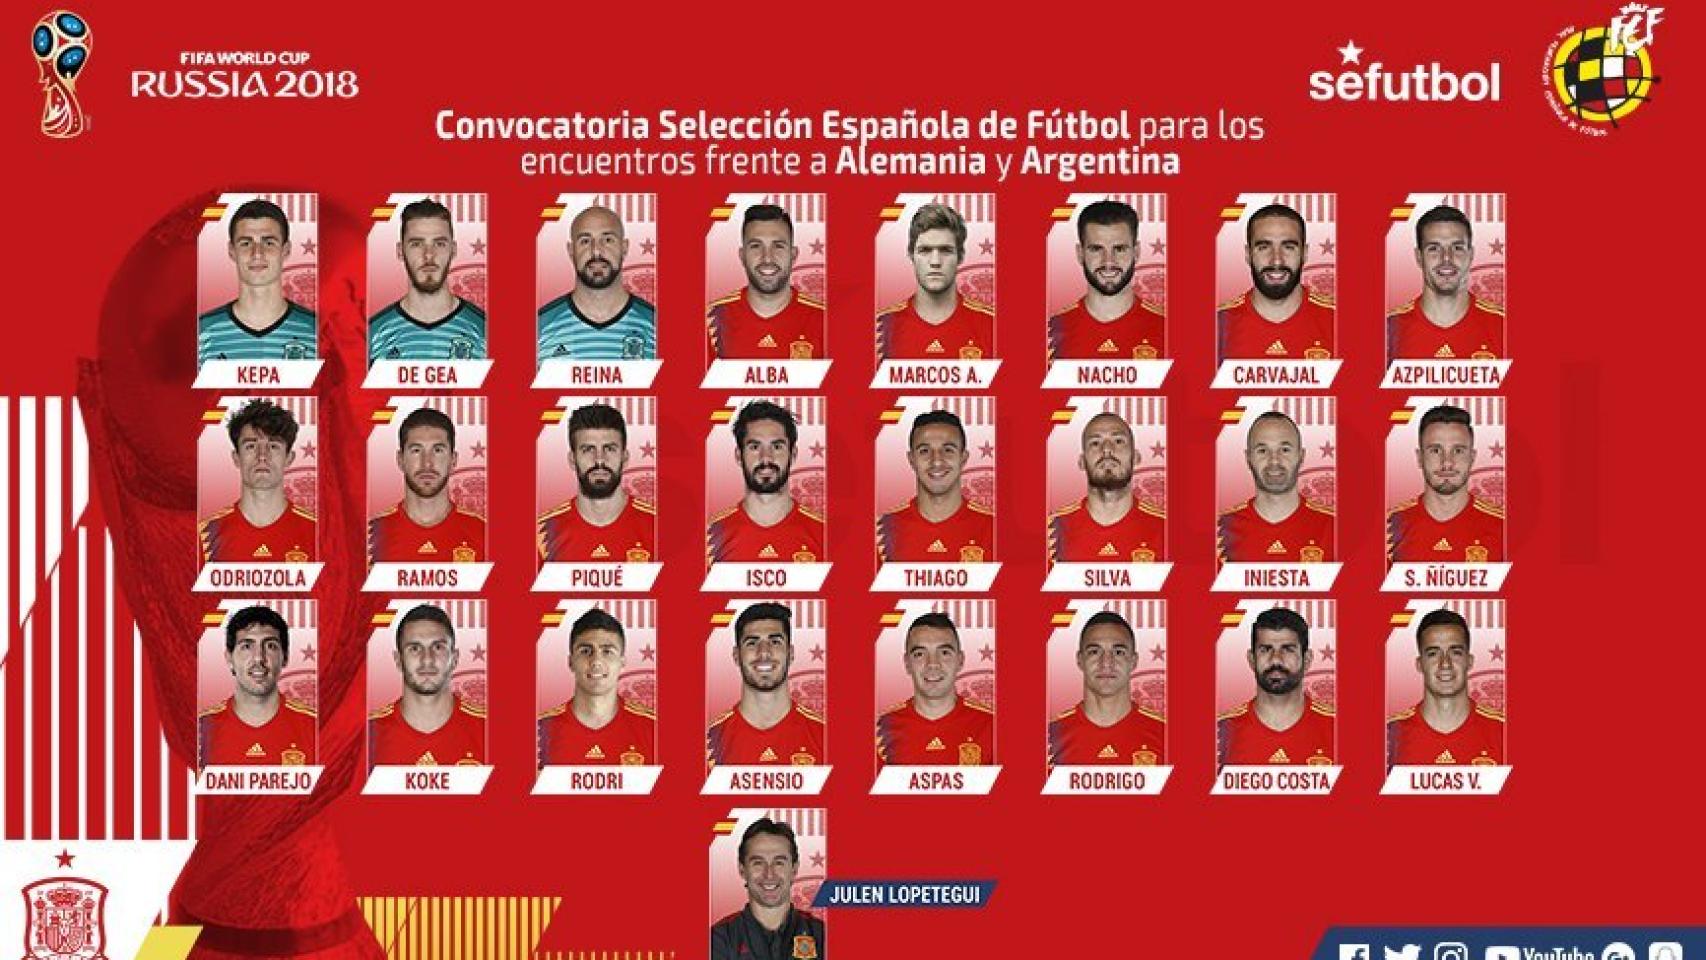 Quién llevará de España ante Alemania Argentina?